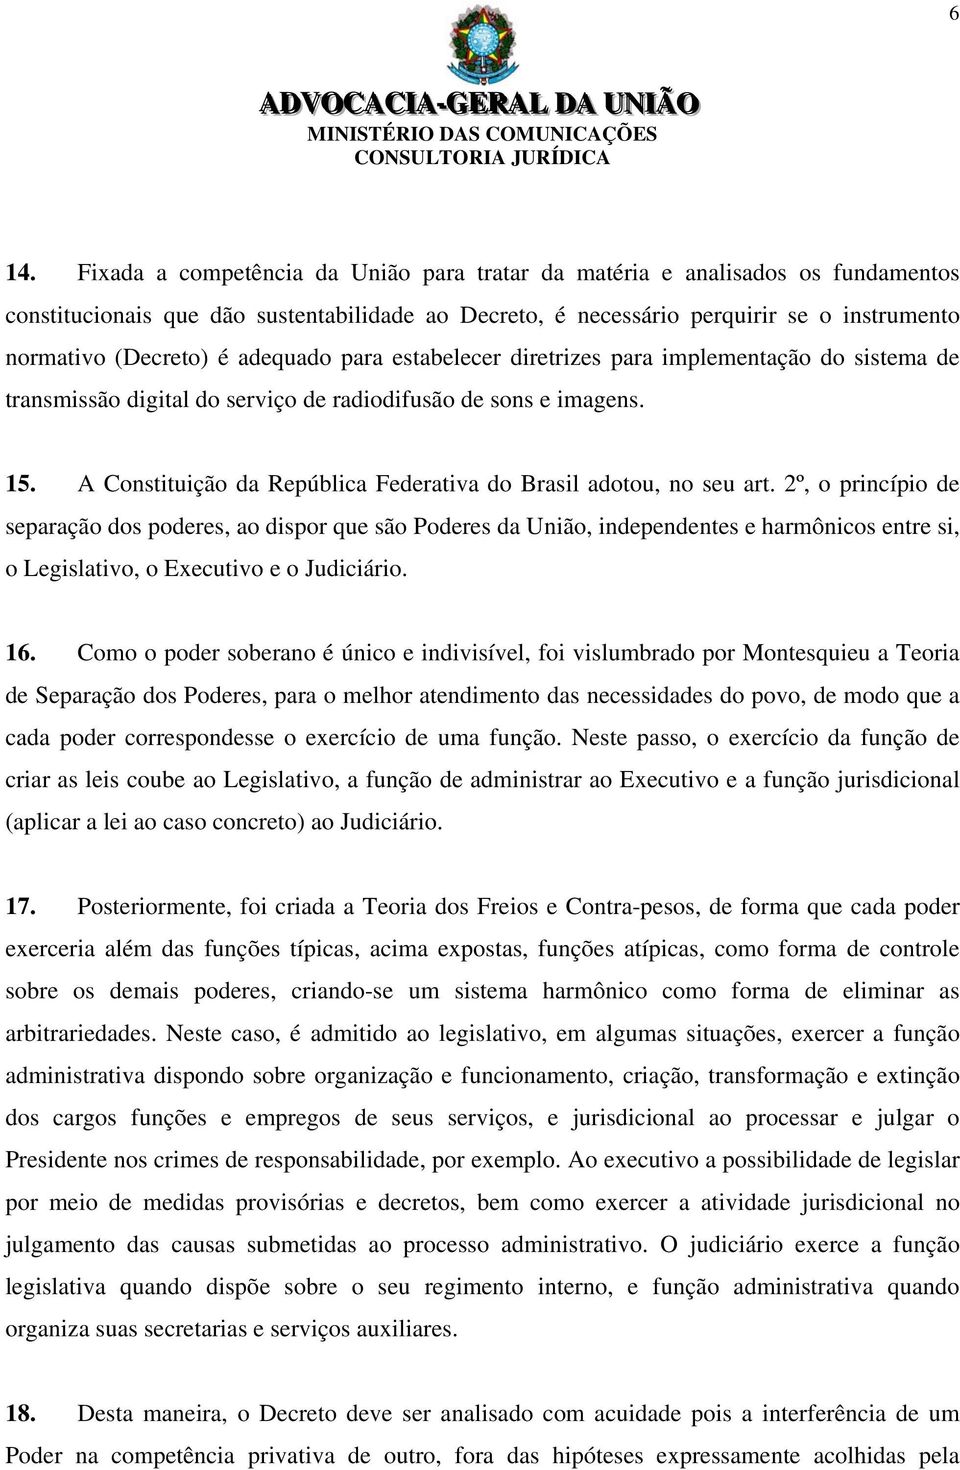 A Constituição da República Federativa do Brasil adotou, no seu art.